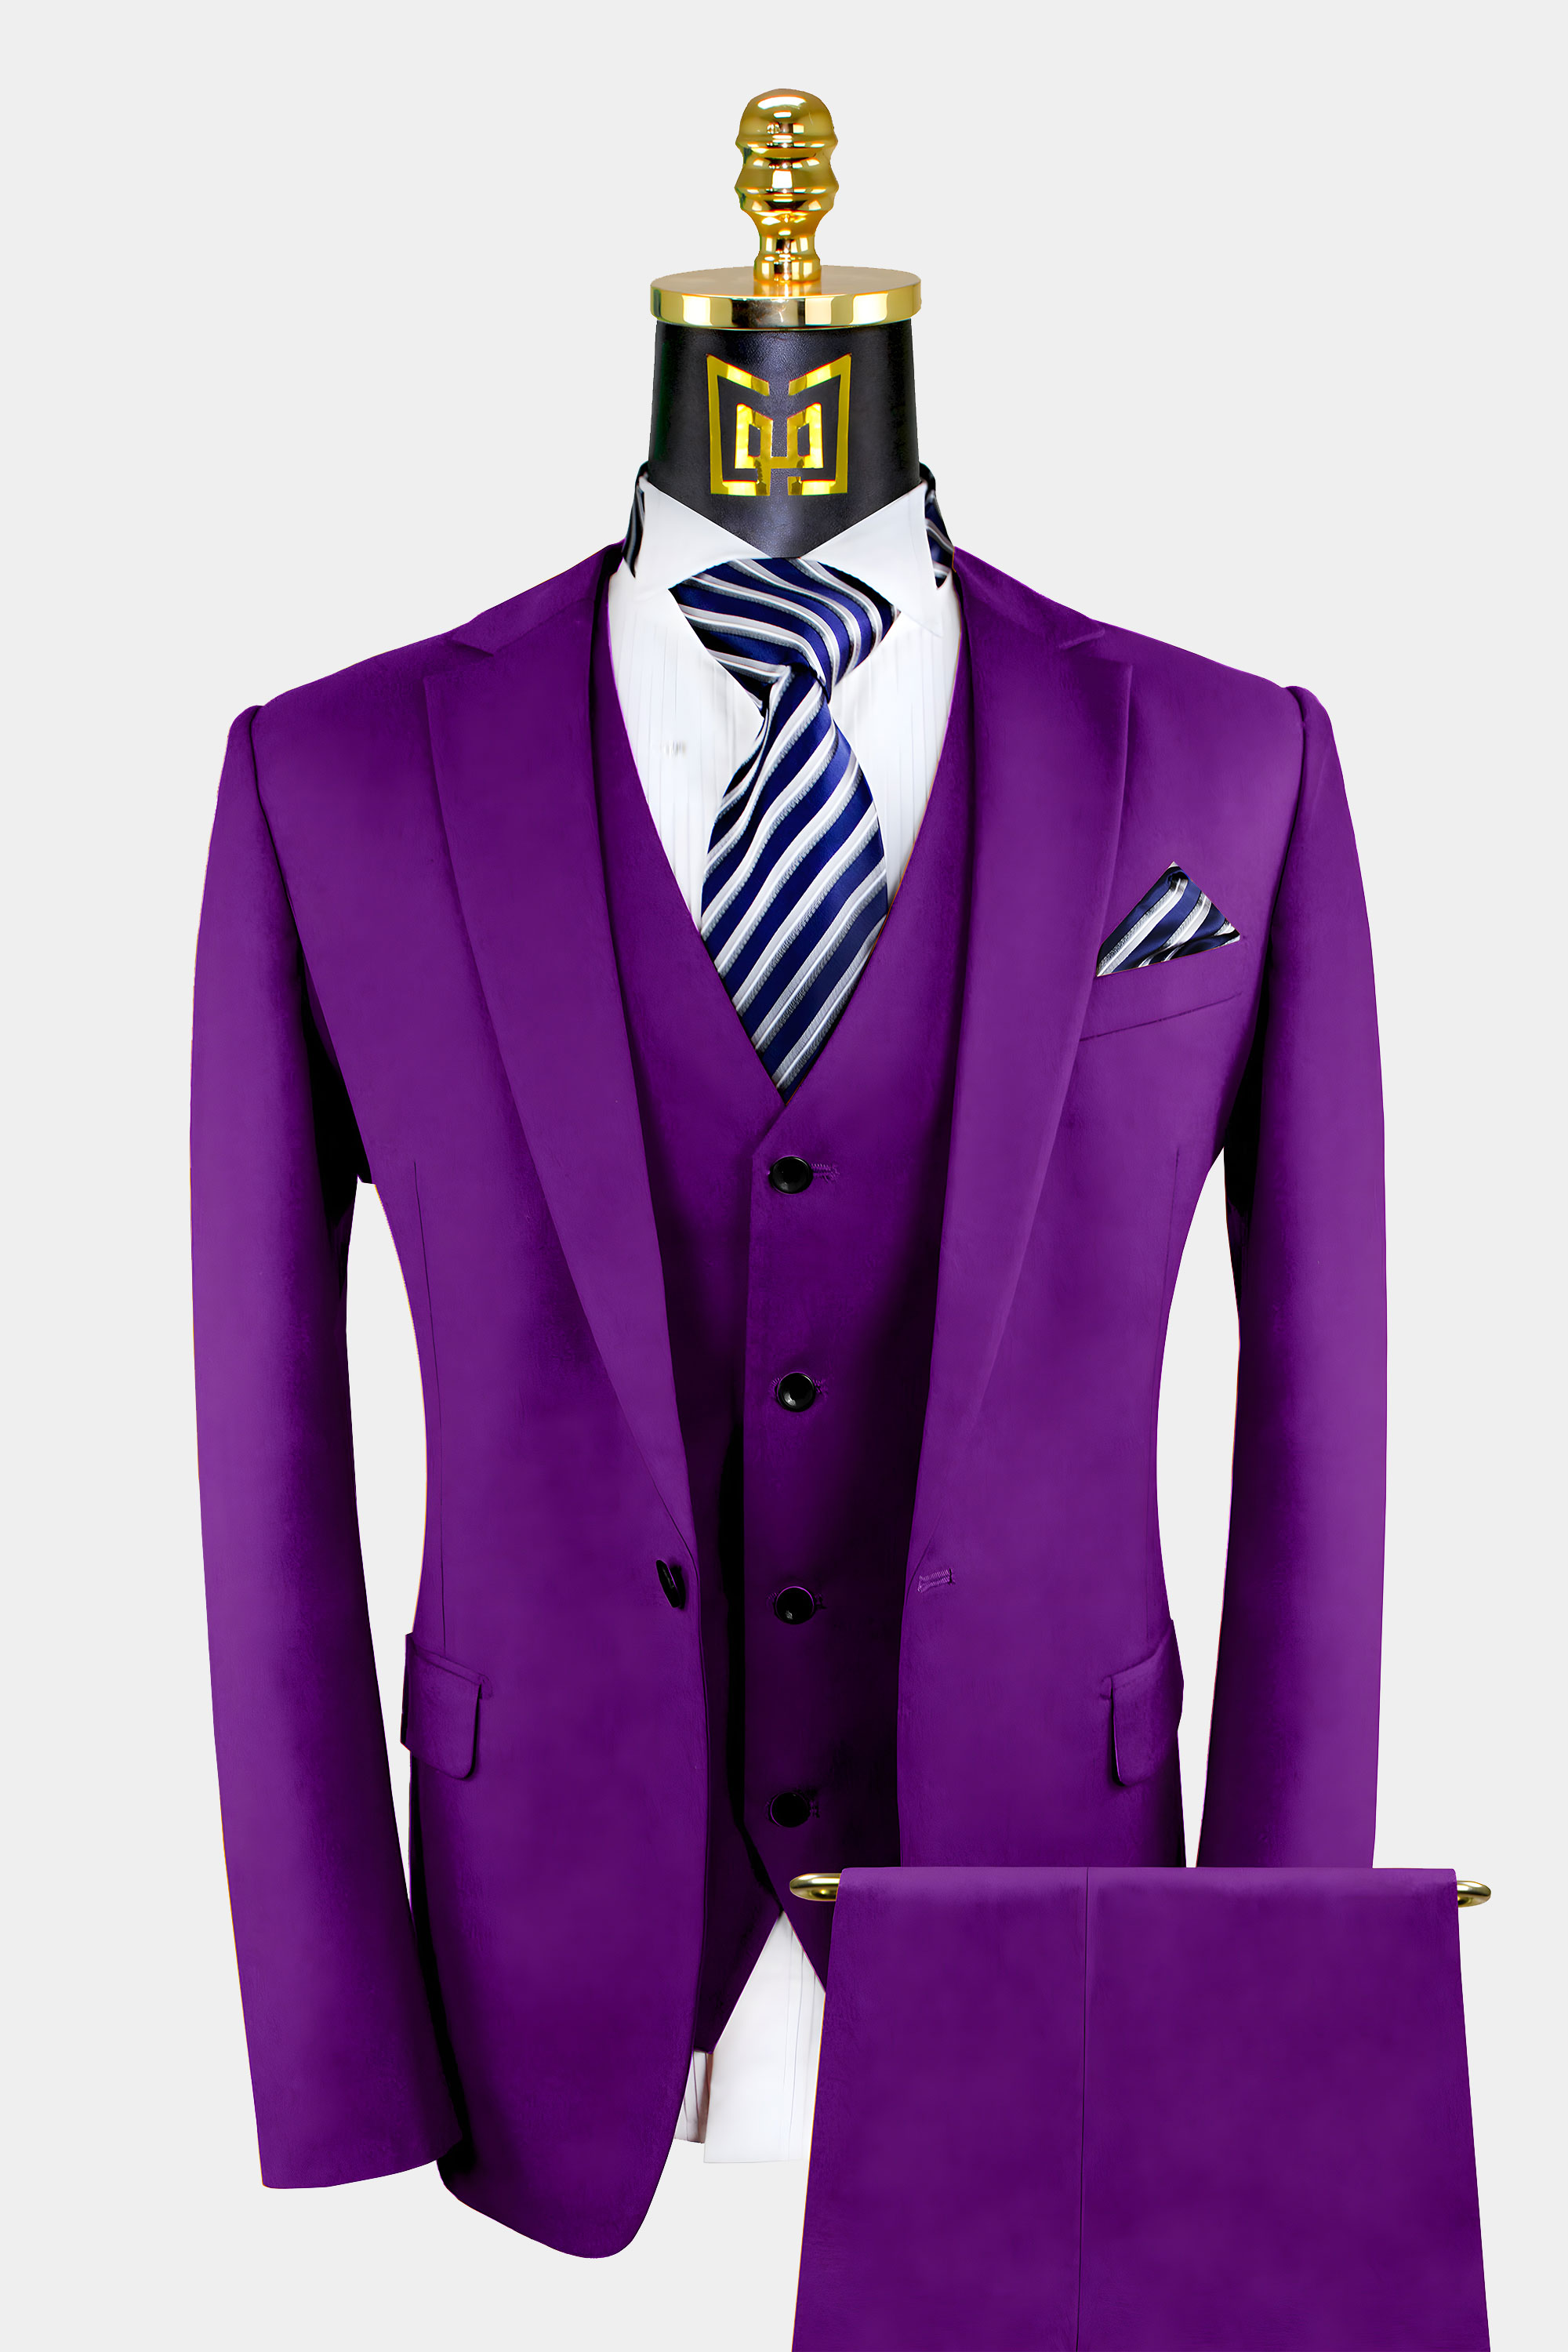 https://www.gentlemansguru.com/wp-content/uploads/2020/06/3-Piece-Purple-Suit-For-Mens-Wedding-Groom-Prom-Tuxedo-from-Gentlemansguru.com_.jpg